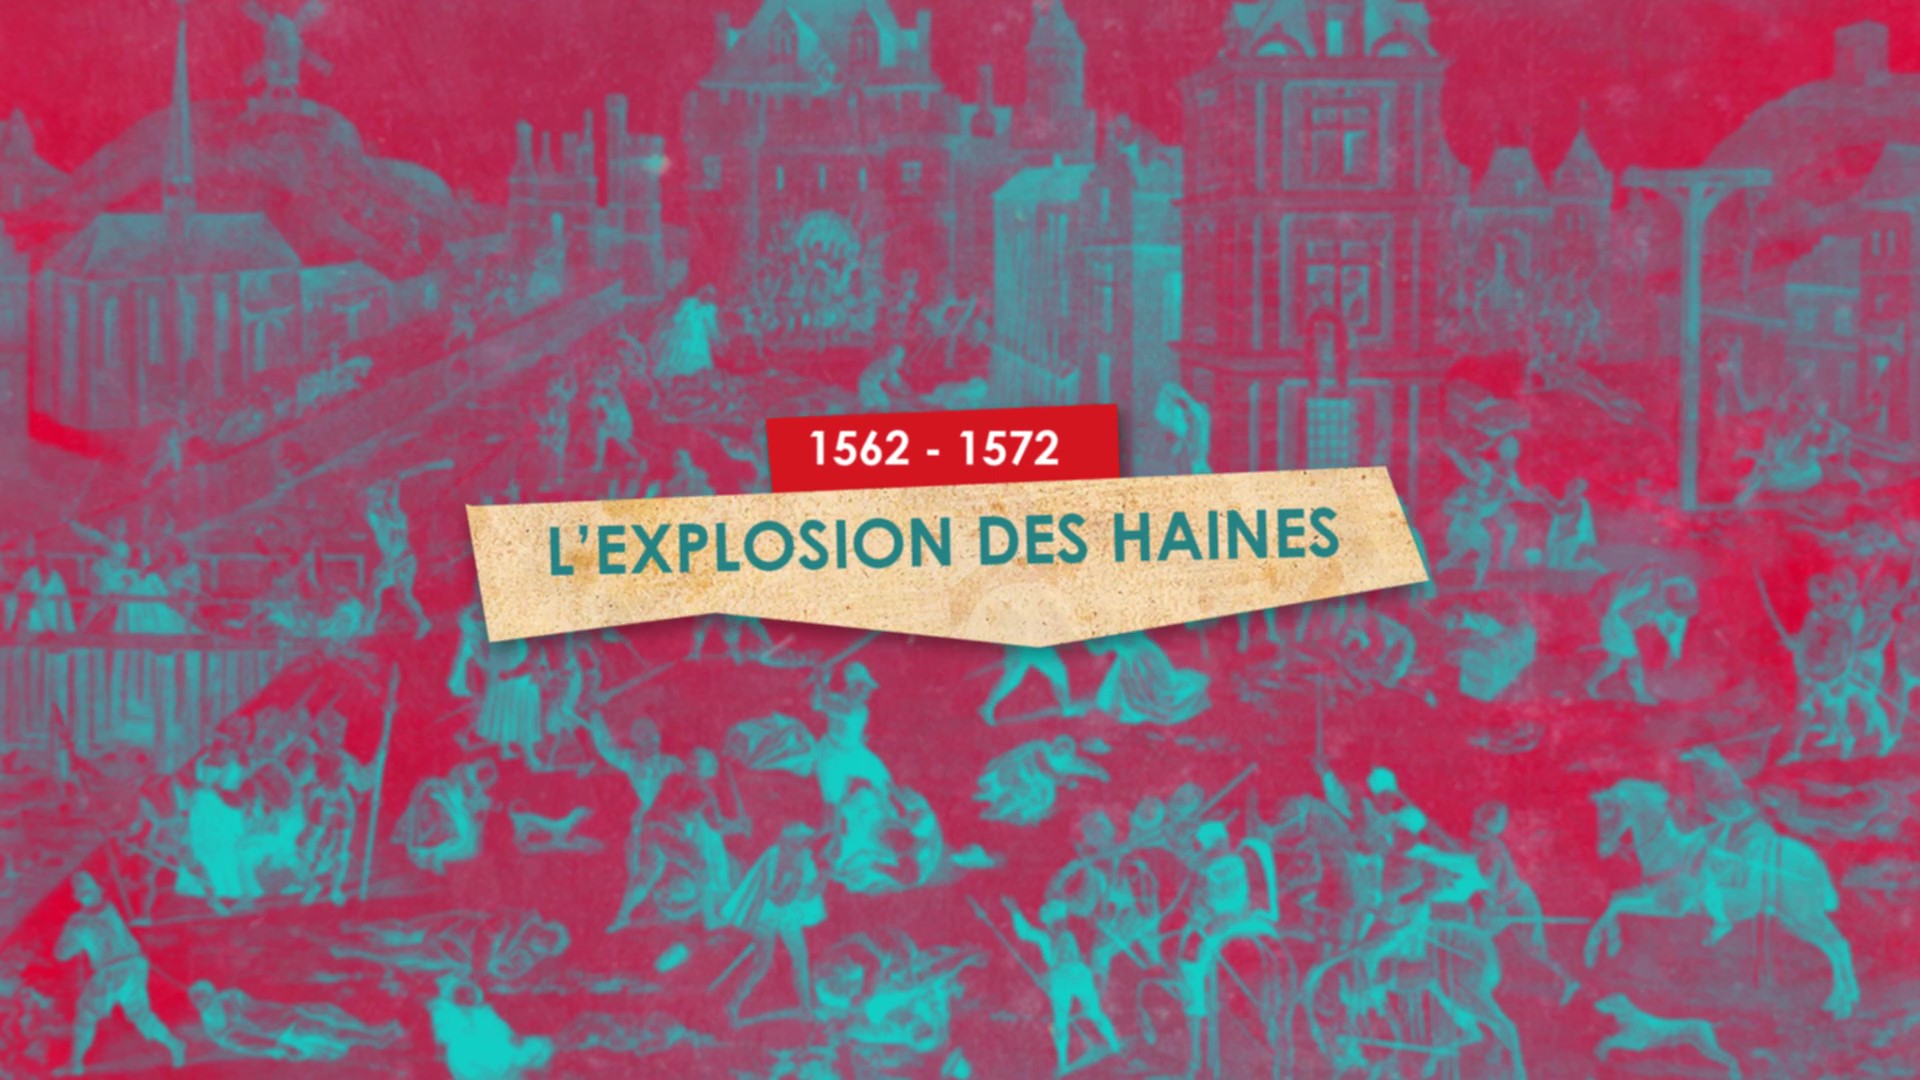 1562/1572 L'explosion des haines